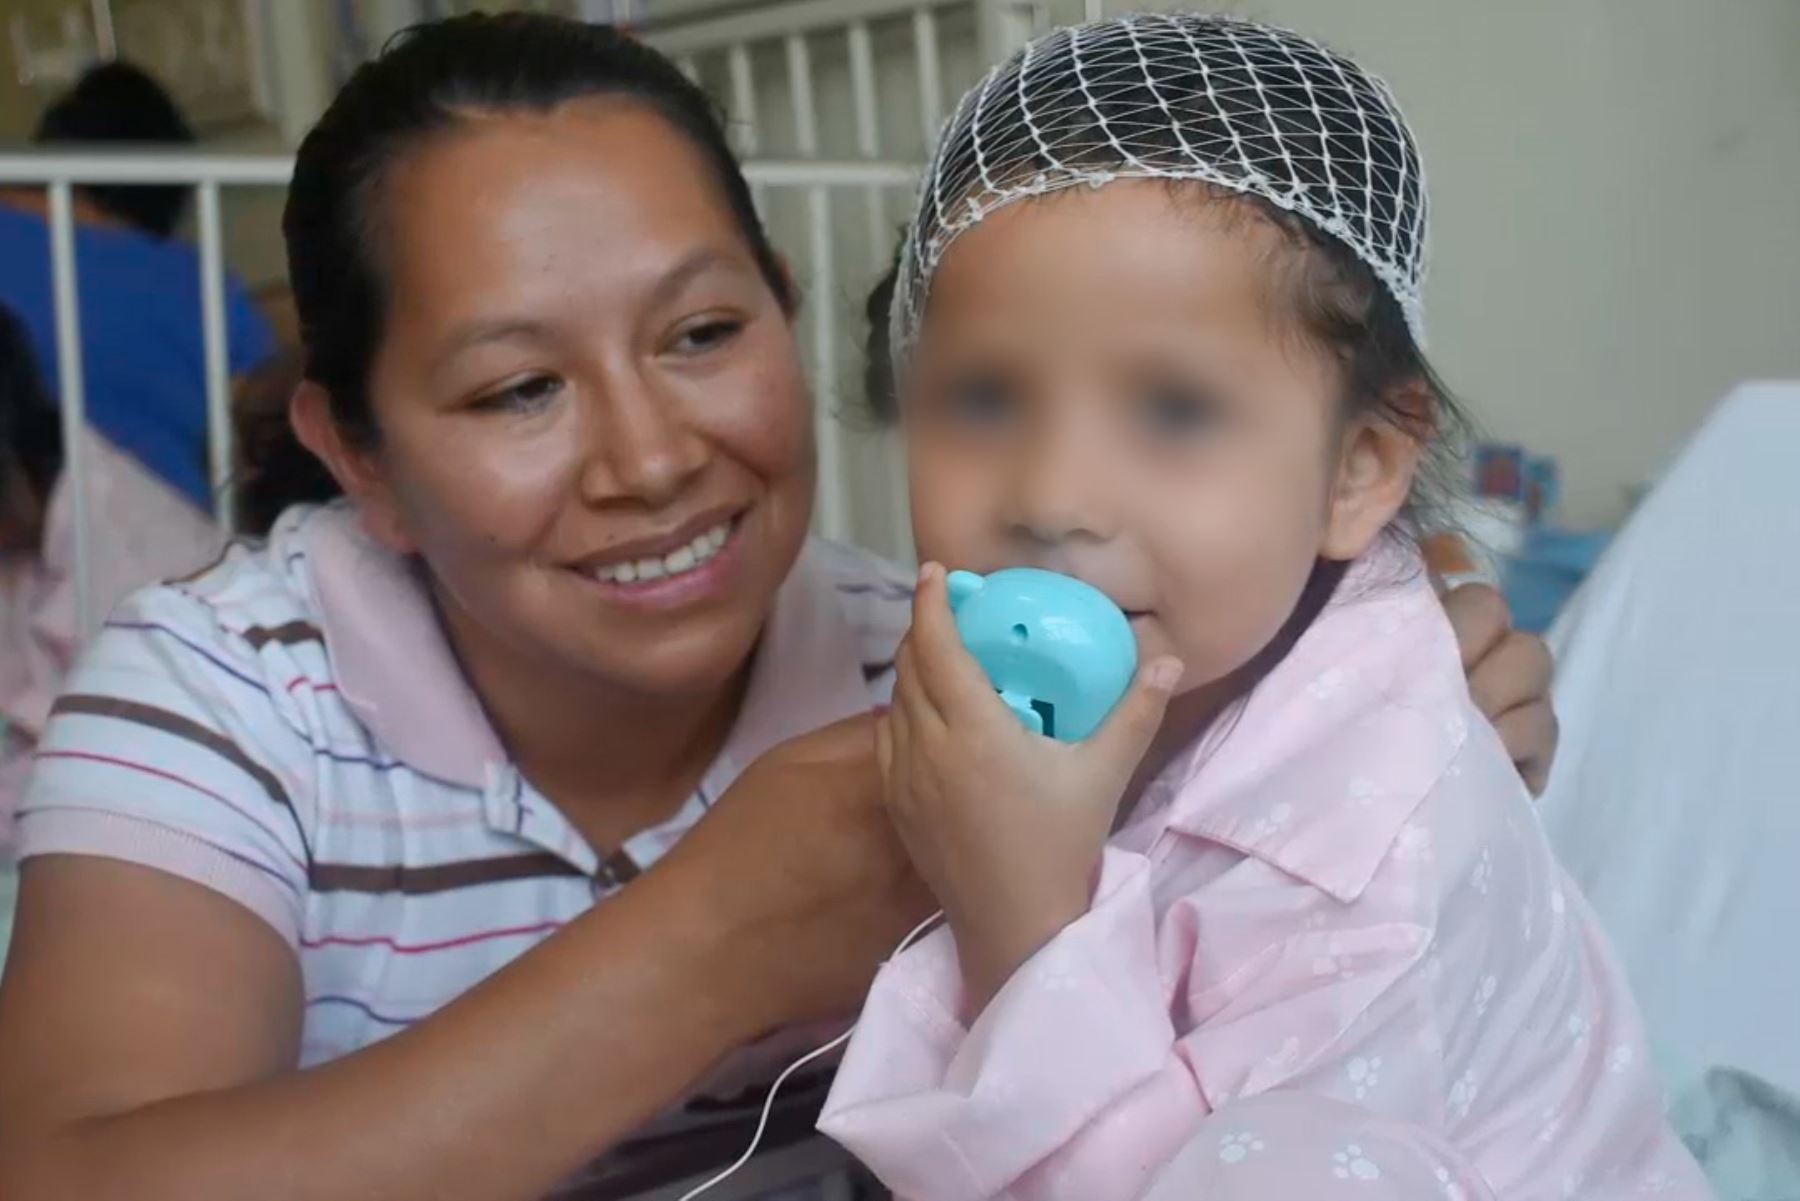 La pequeña Romina superó la sordera gracias a implante coclear financiado por el SIS. Foto: Andina/Difusión